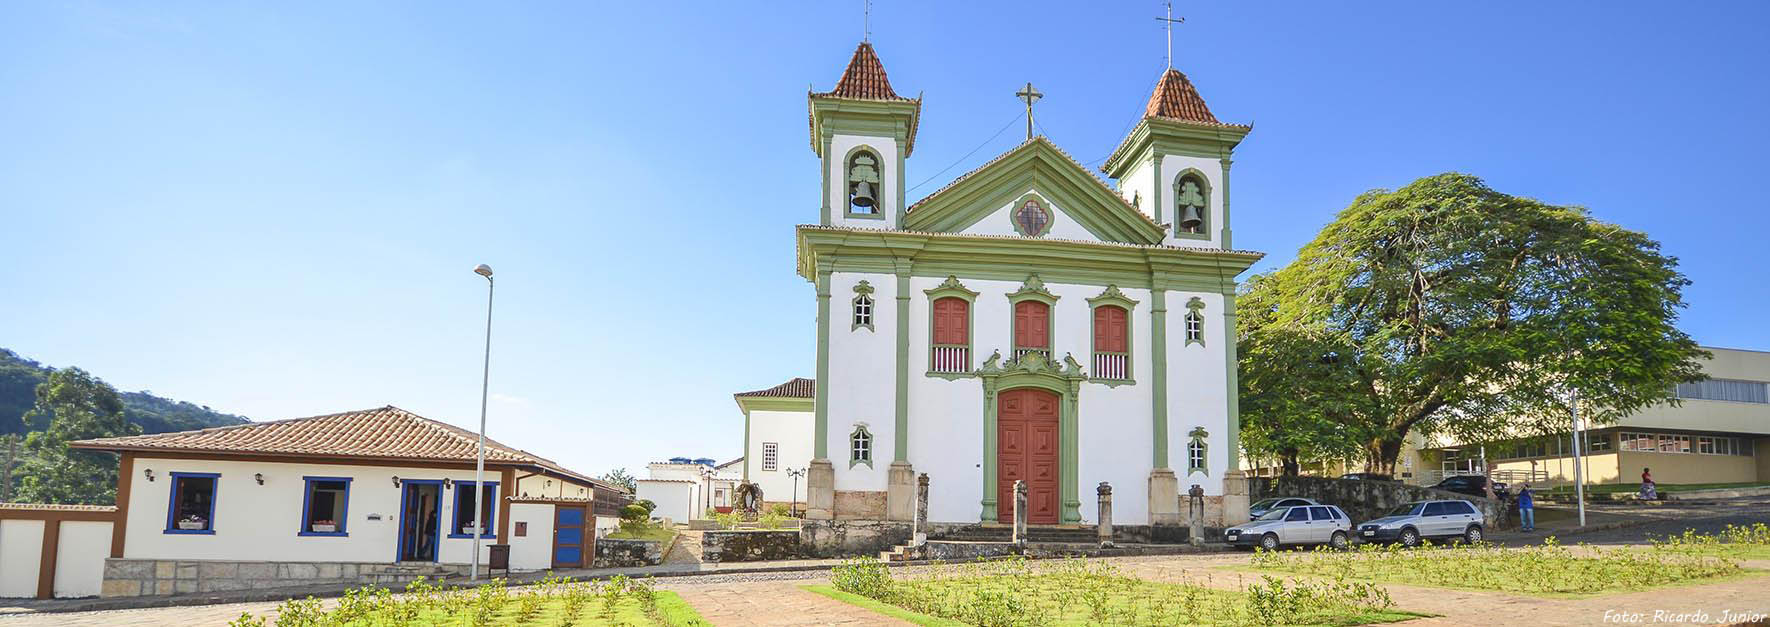 CIRCUITO DO OURO: Ouro Preto, Mariana, Congonhas, Santa Bárbara e Sabará